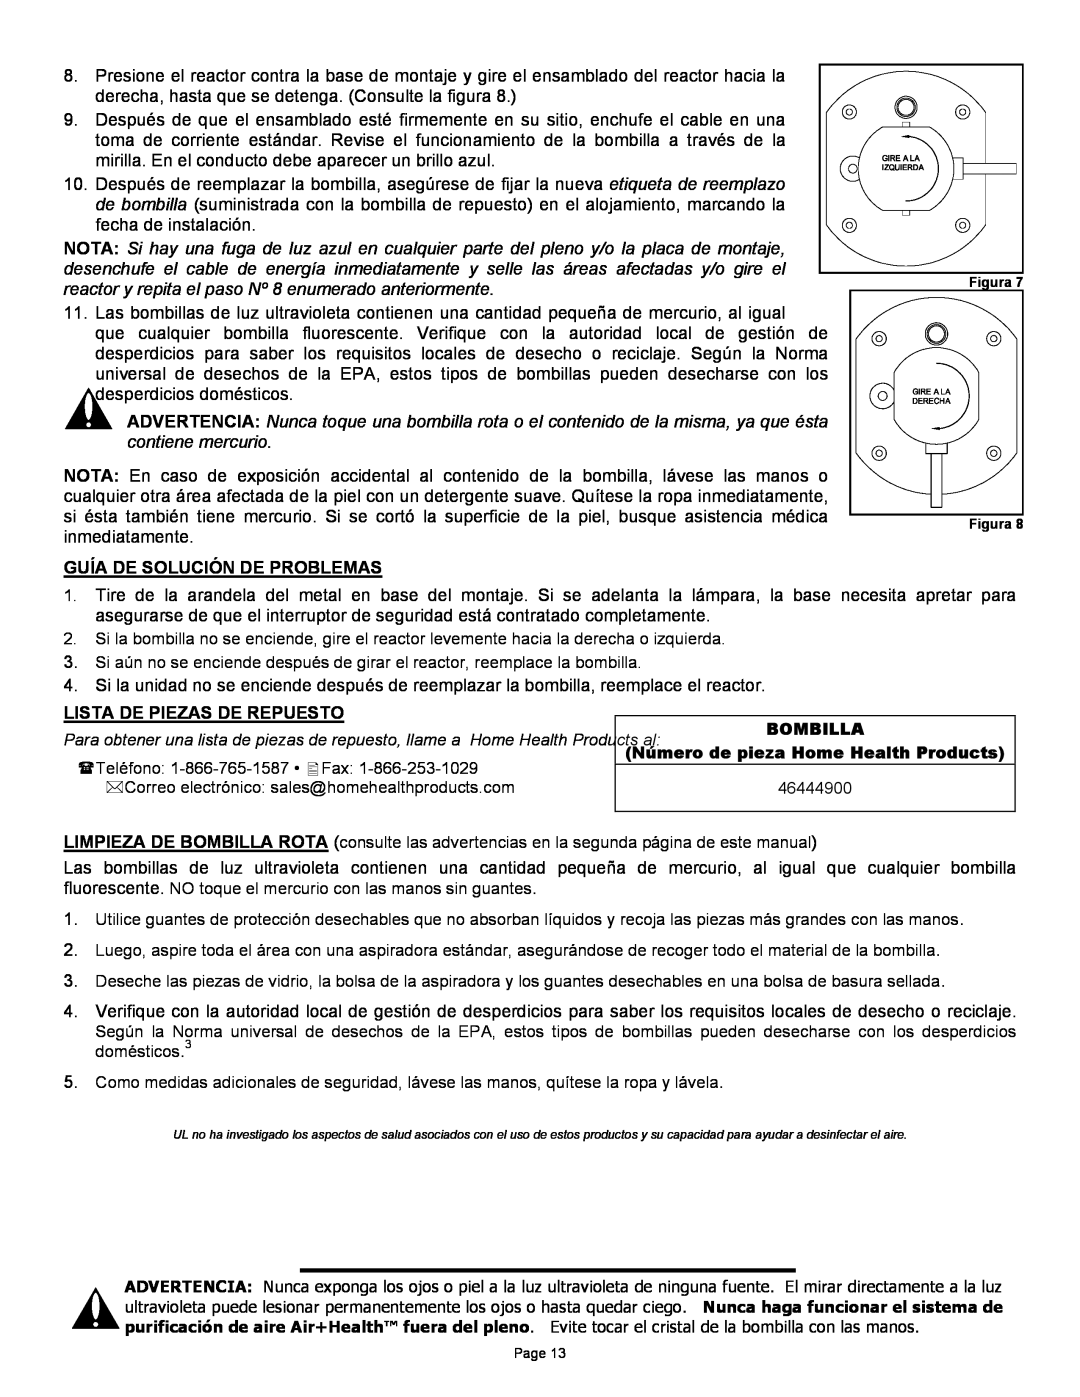 Air Health AH-1, AH-RL instruction sheet Lista De Piezas De Repuesto, Guía De Solución De Problemas 